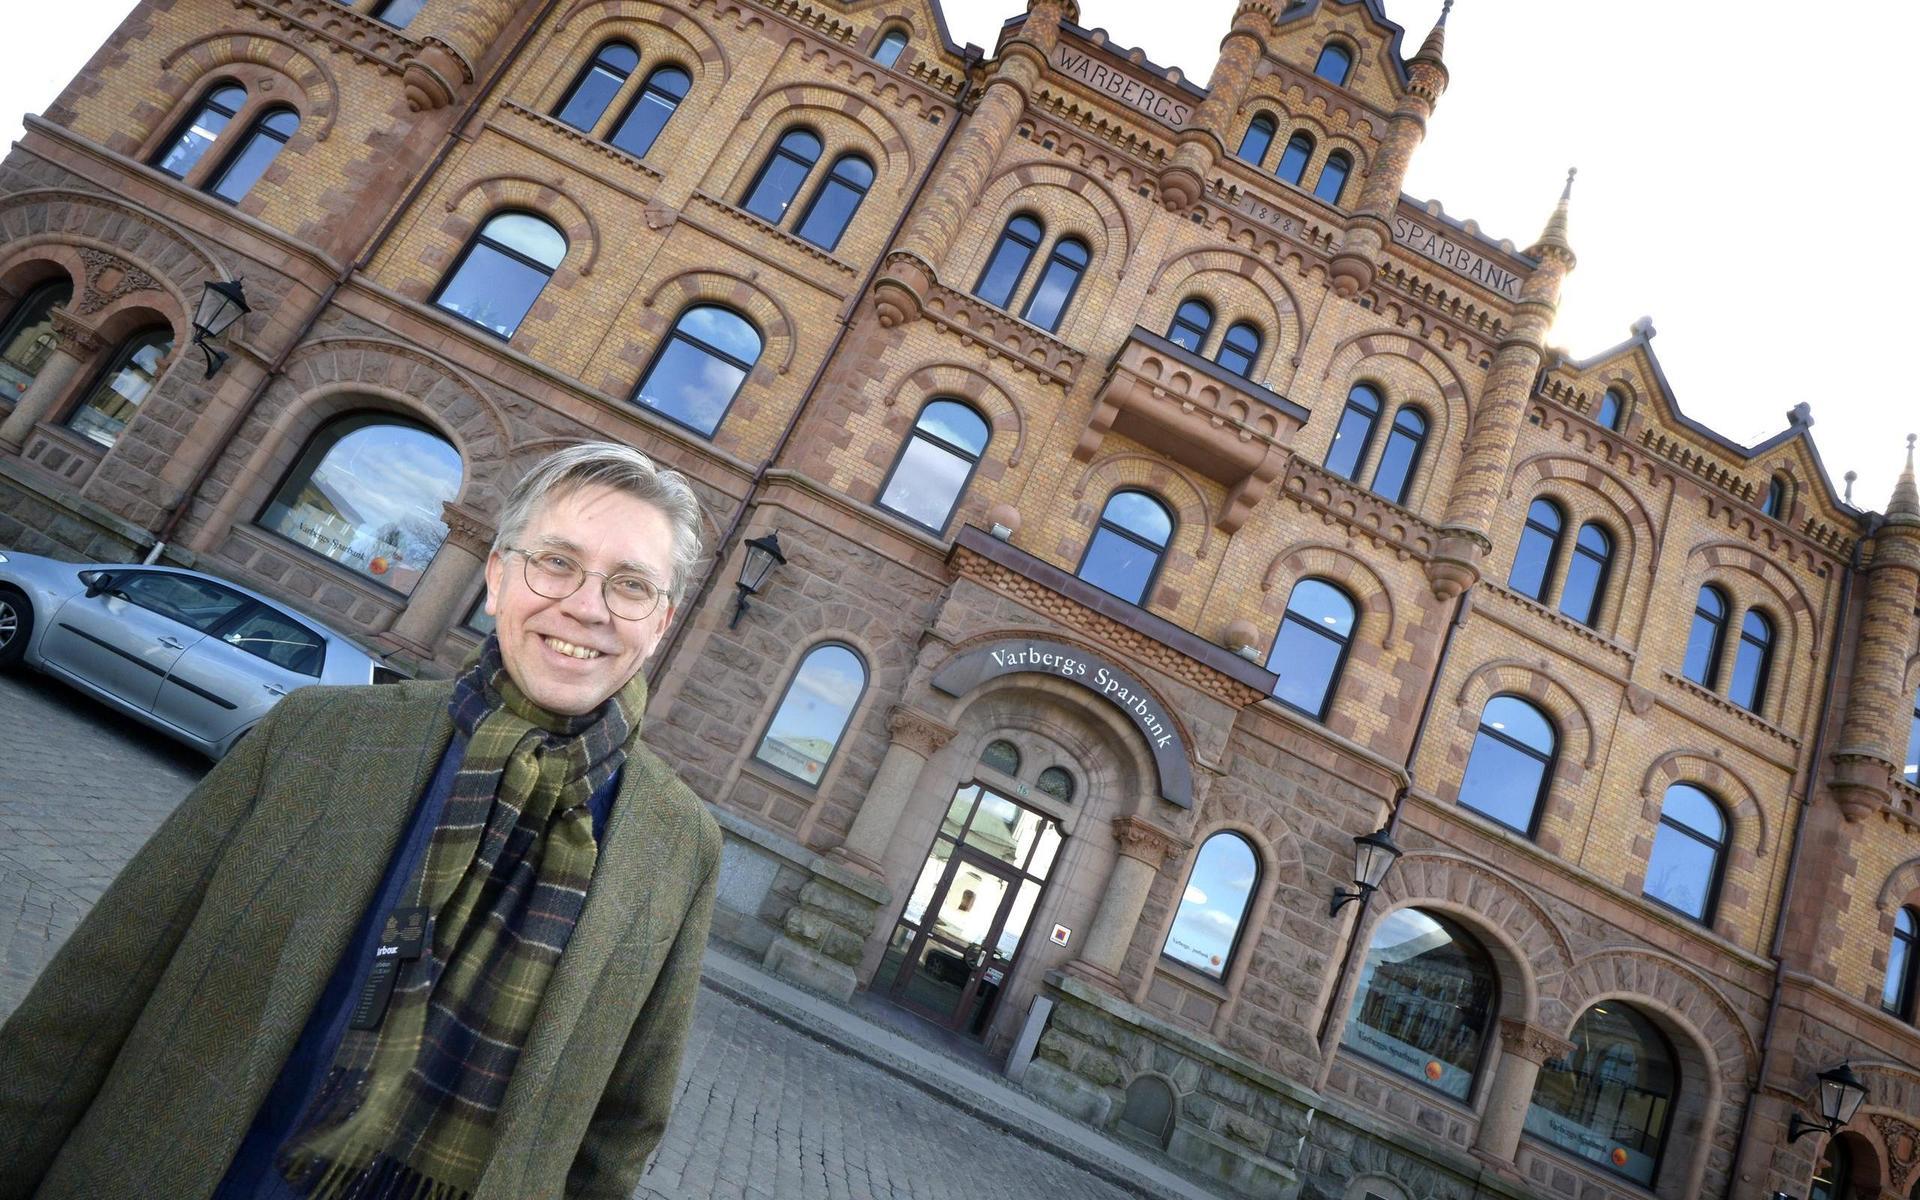 Lokalhistorikern Peter Börjesson har beundrat bankhuset sen han var liten pojke. ”Det är Sveriges vackraste bankhus”, säger han.